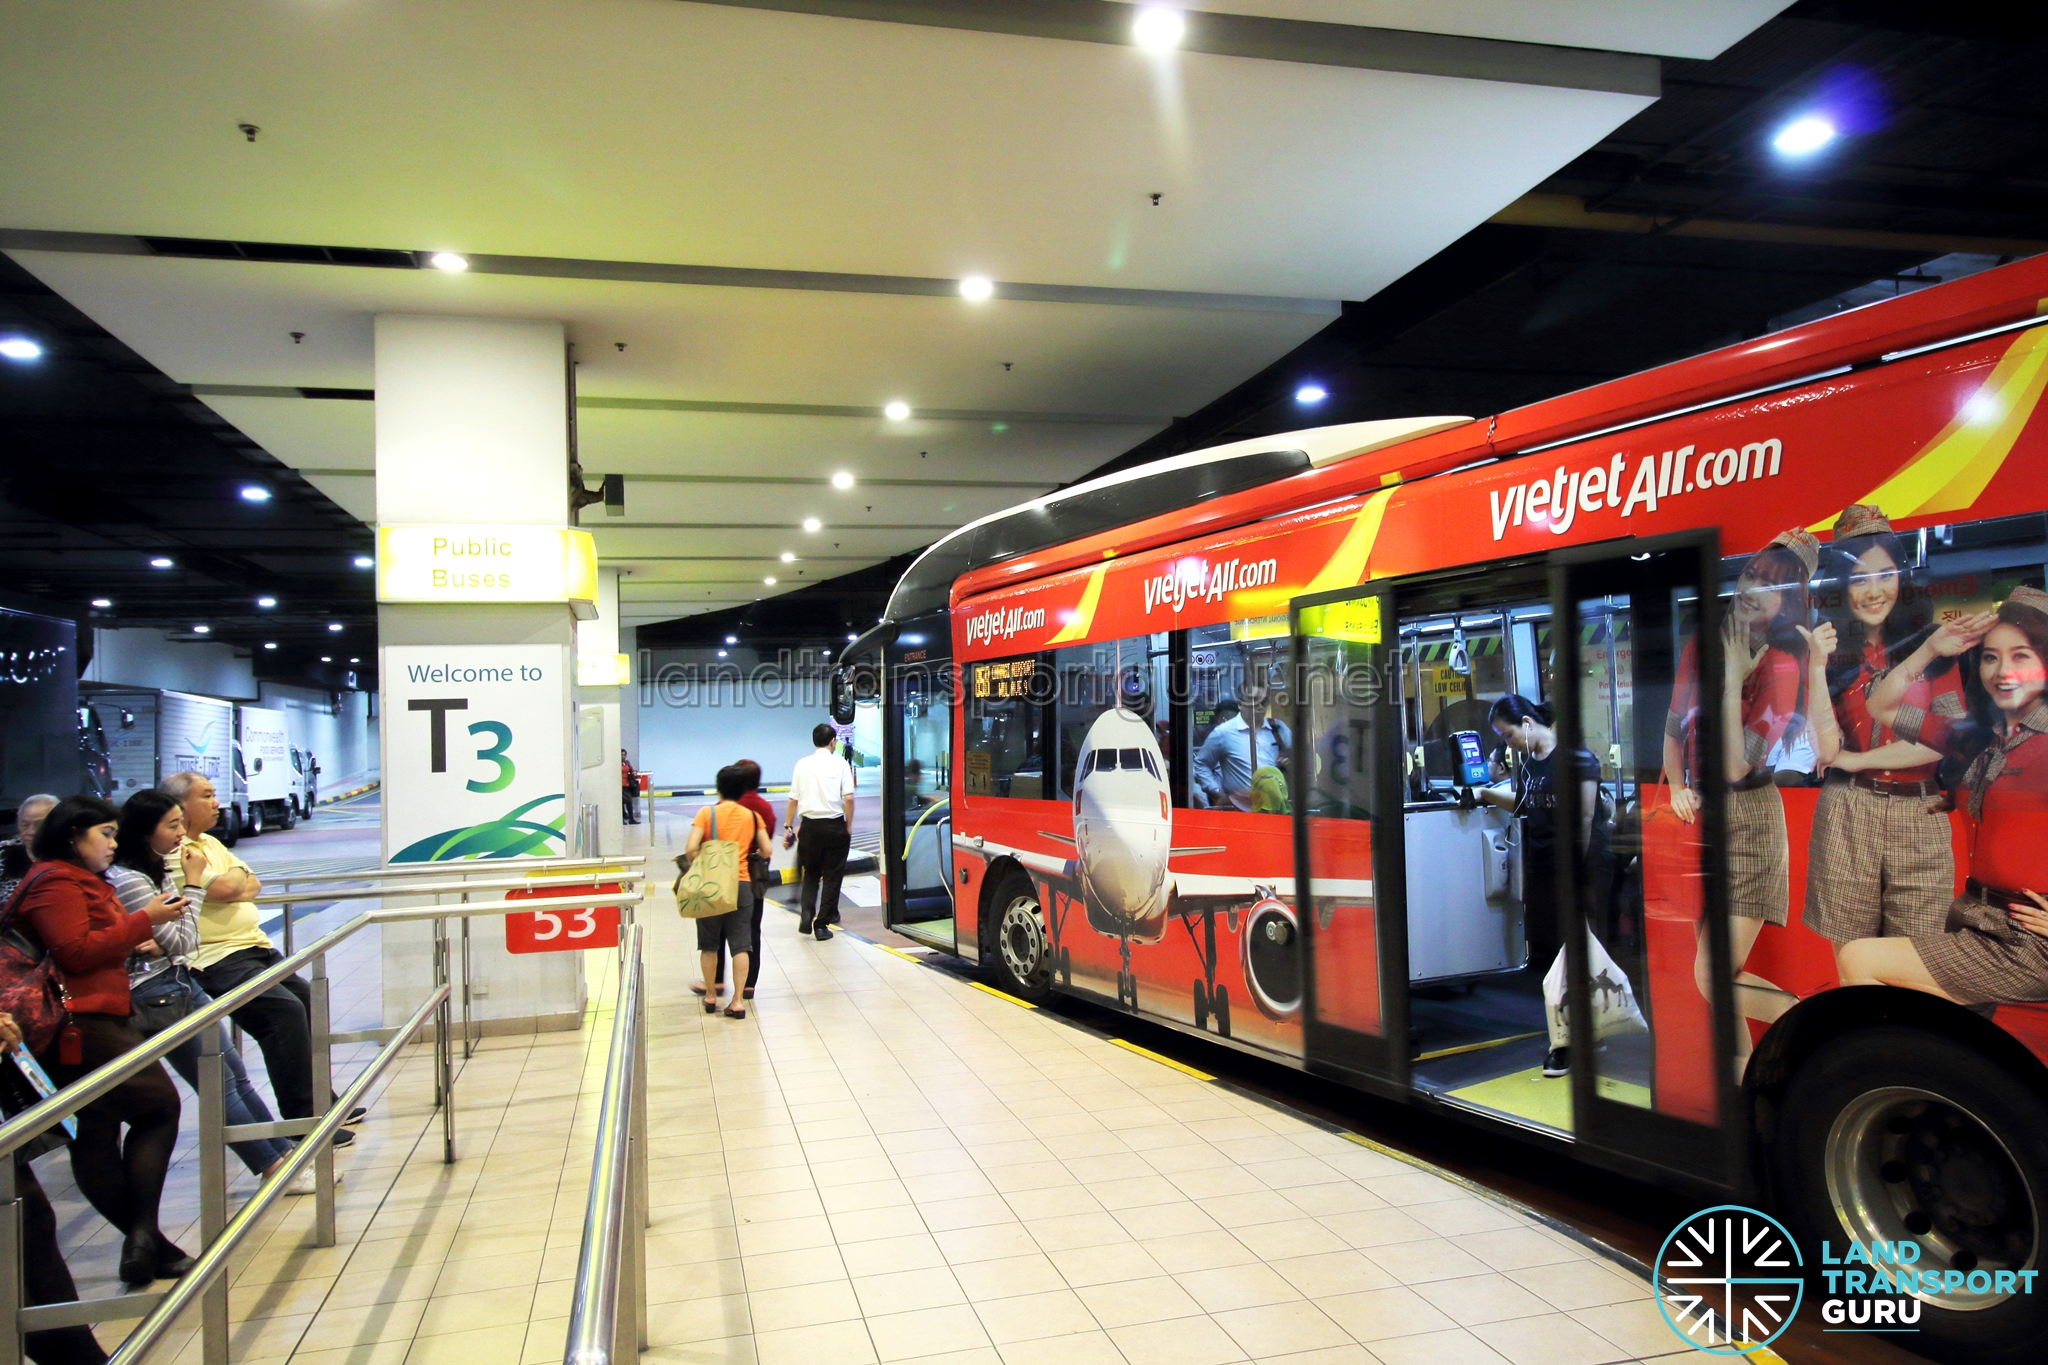 Singapore Changi Airport Tour Terminal 3 Transit Timeshift Video 